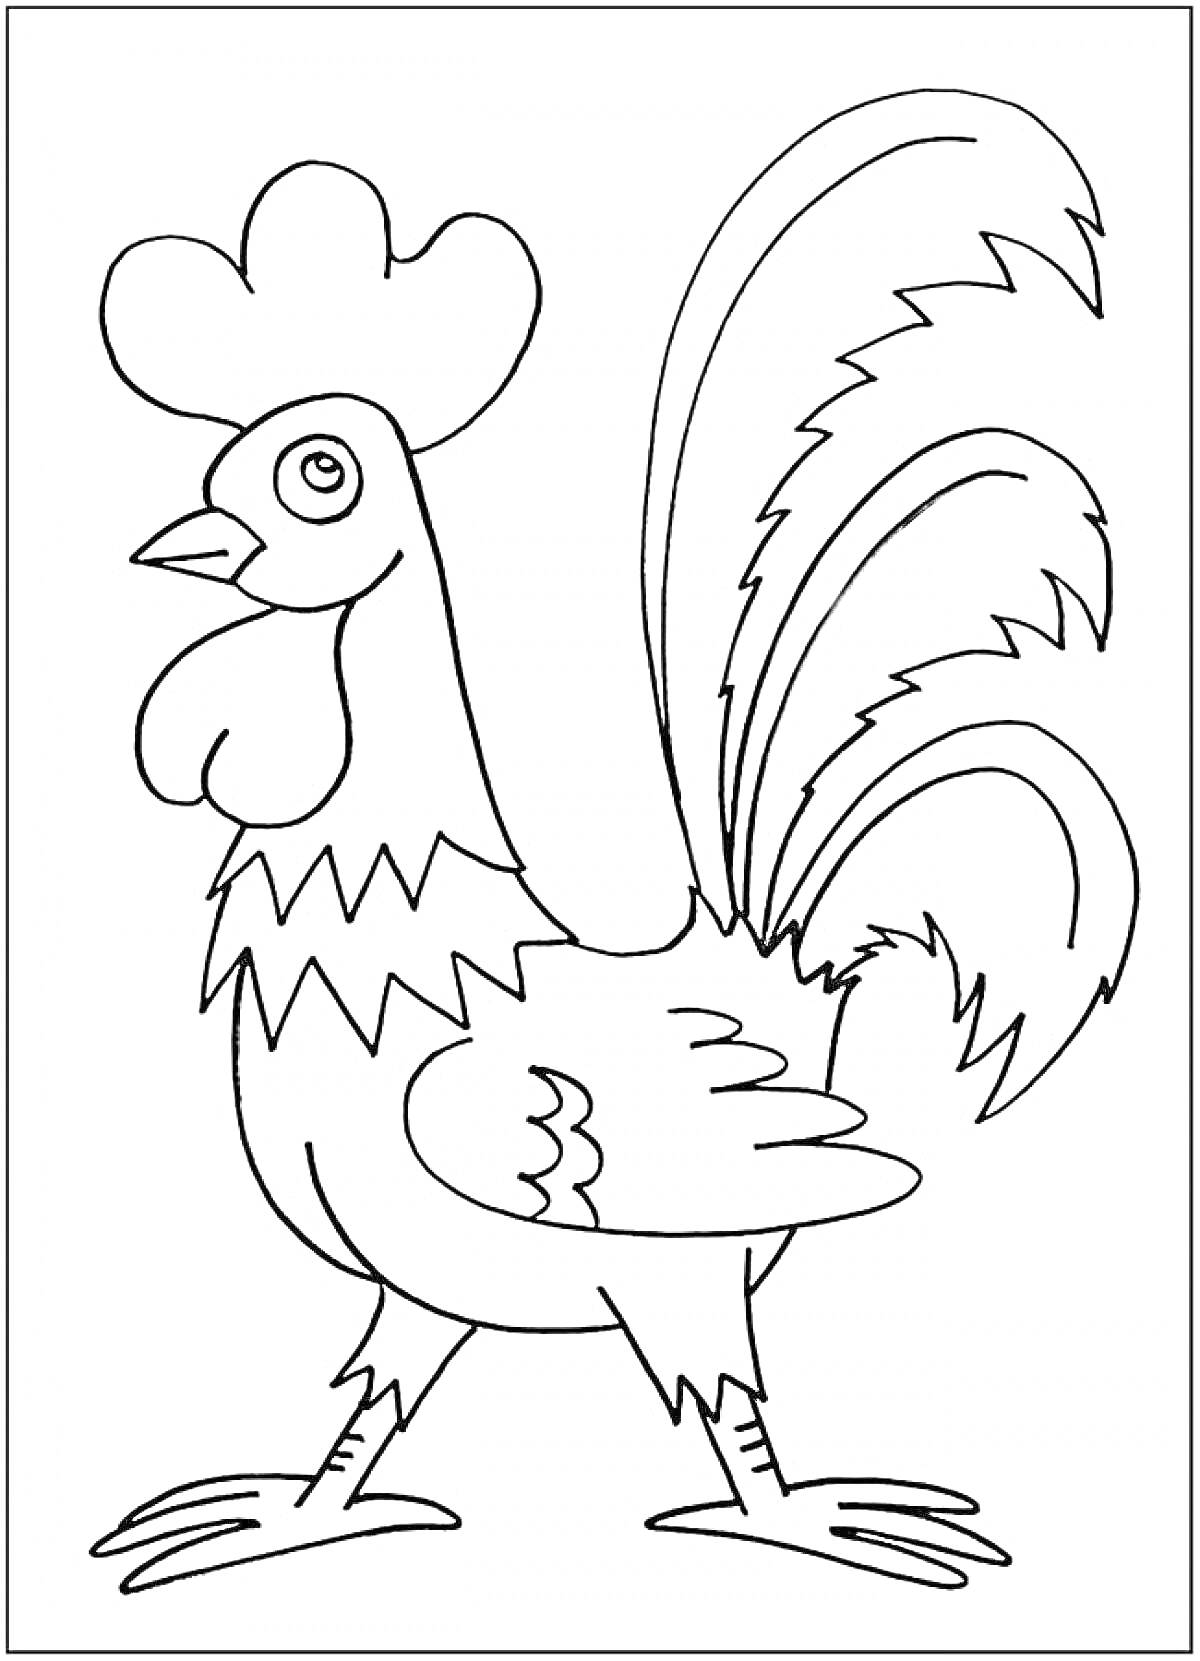 Раскраска Петушок с крупным гребнем, пёстрым хвостом и пышной шеей